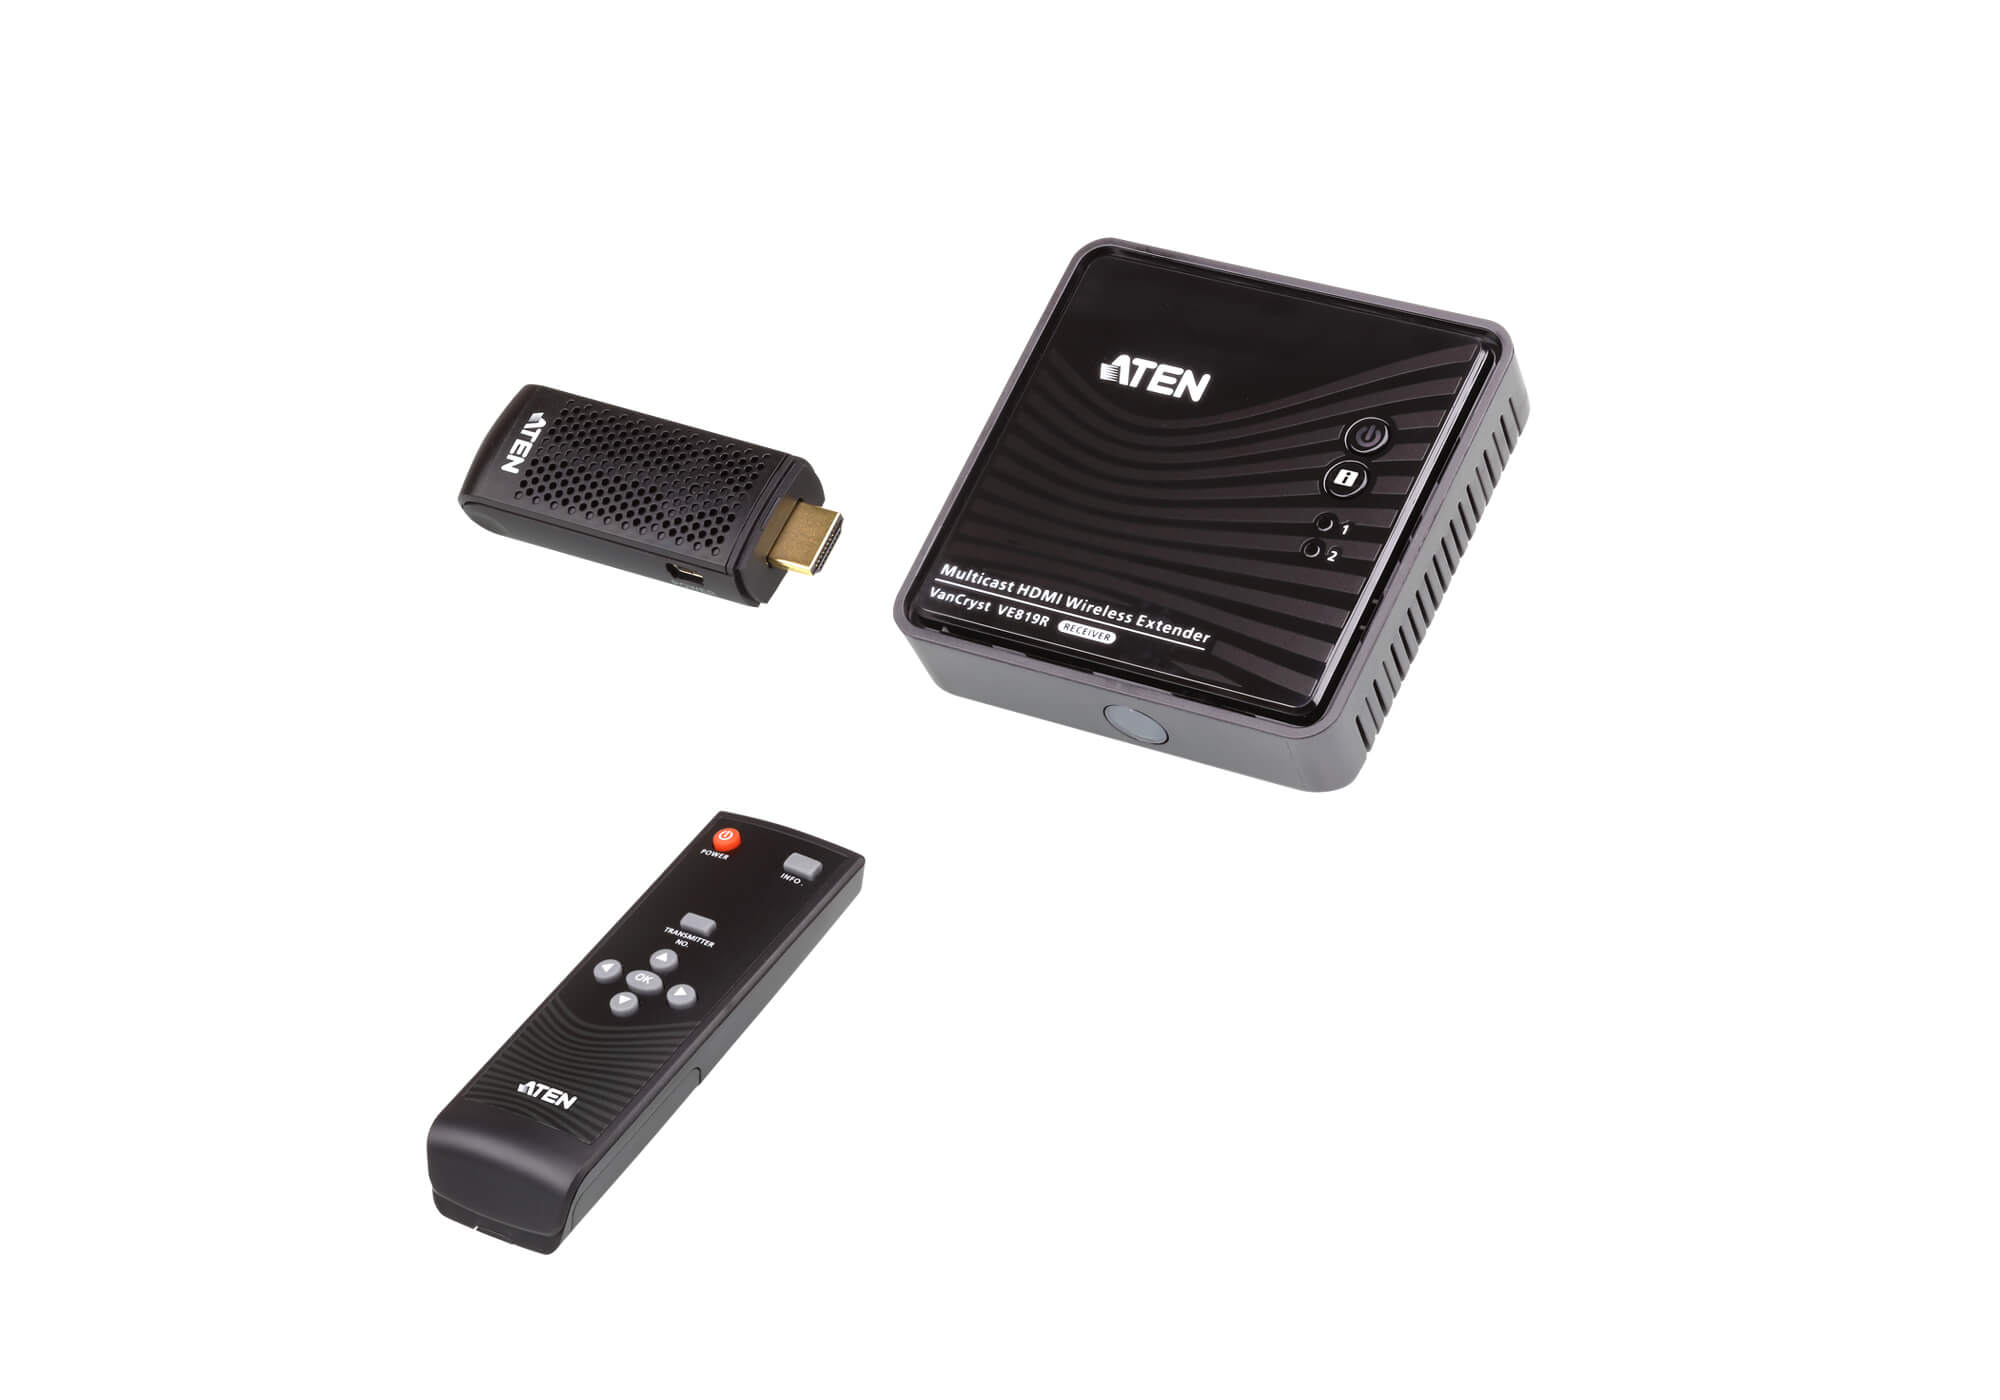 اکستندر بی سیم دانگل HDMI آتن مدل Aten VE819 راه حلی عالی برای اتاق جلسات و سیستم های سینمای خانگی است، سیگنال فشرده نشده Full HD 1080p را از دستگاه های HDMI (مانند لپ تاپ، سیستم های کامپیوتری و ستاپ باکس ها) ارسال می کند